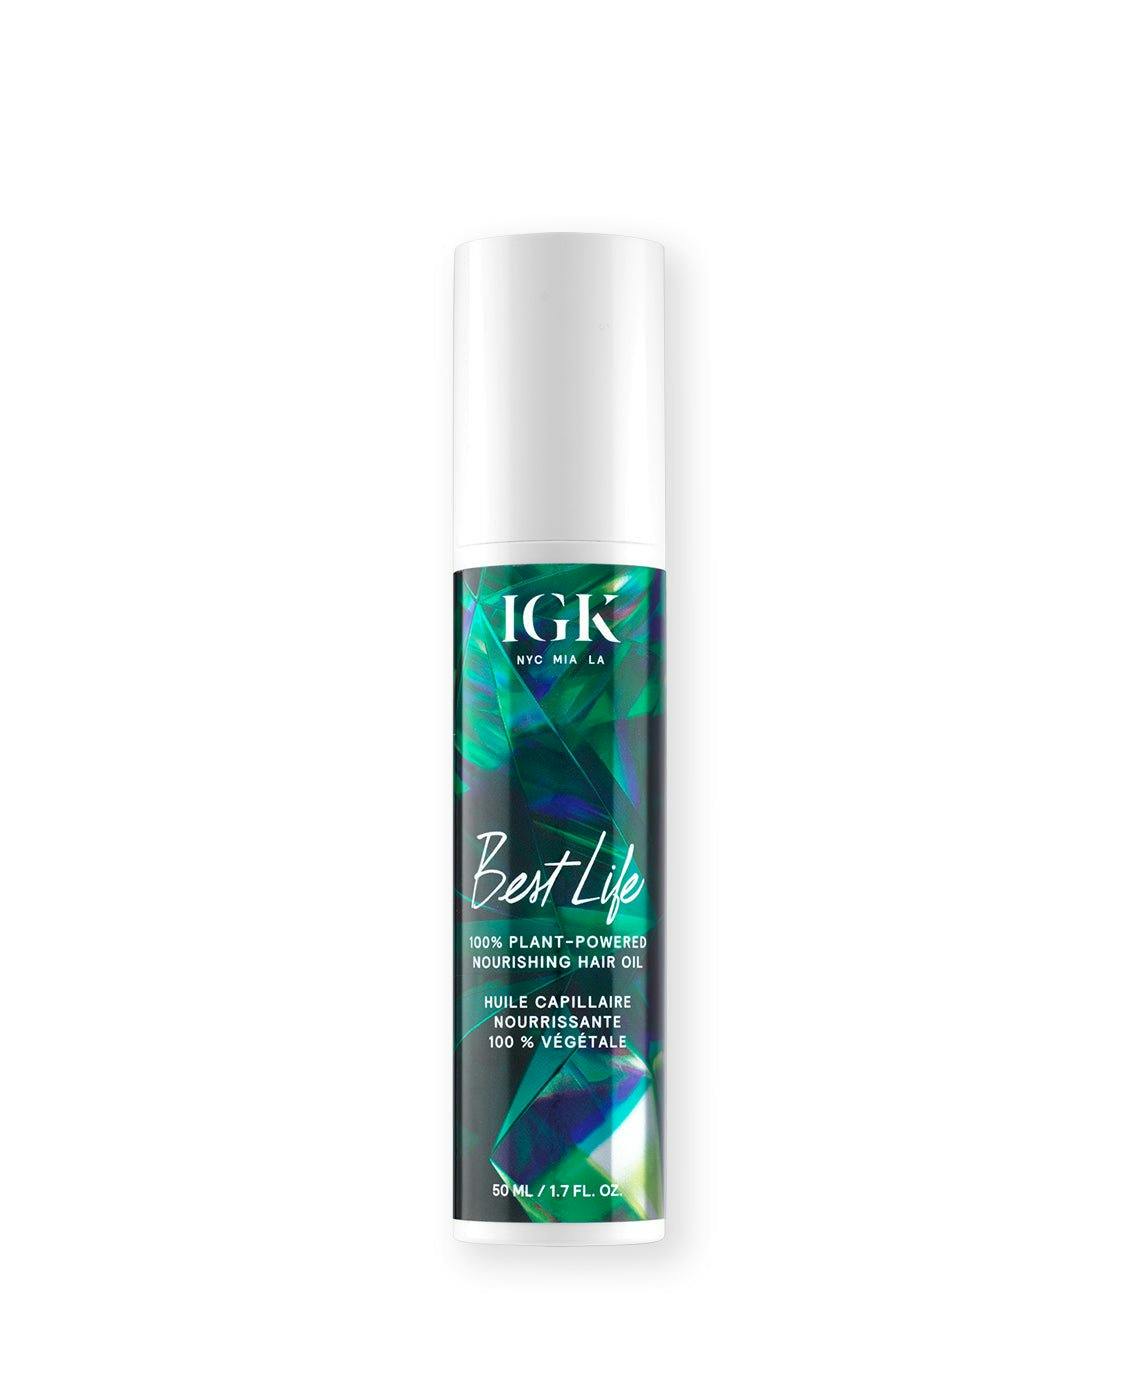 IGK Best Life 100% Plant-Powered Nourishing Hair Oil 44ml